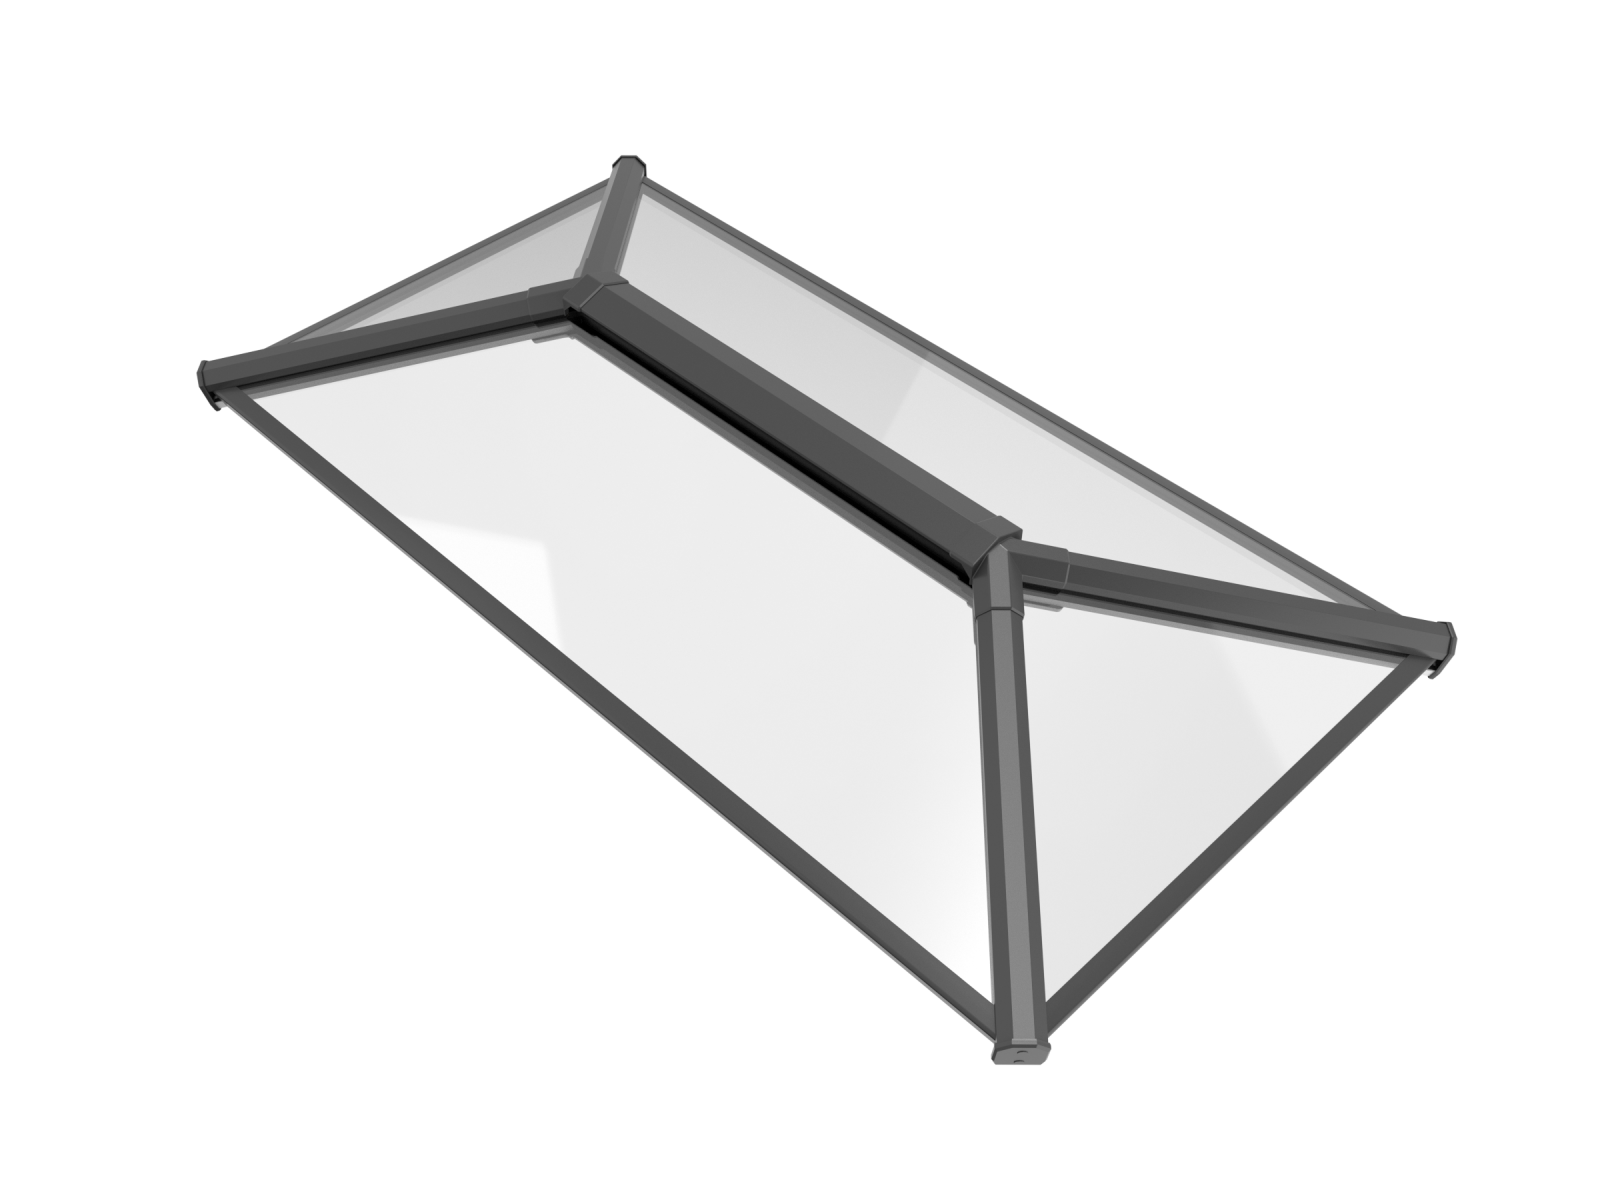 Stratus Aluminium Roof Lantern